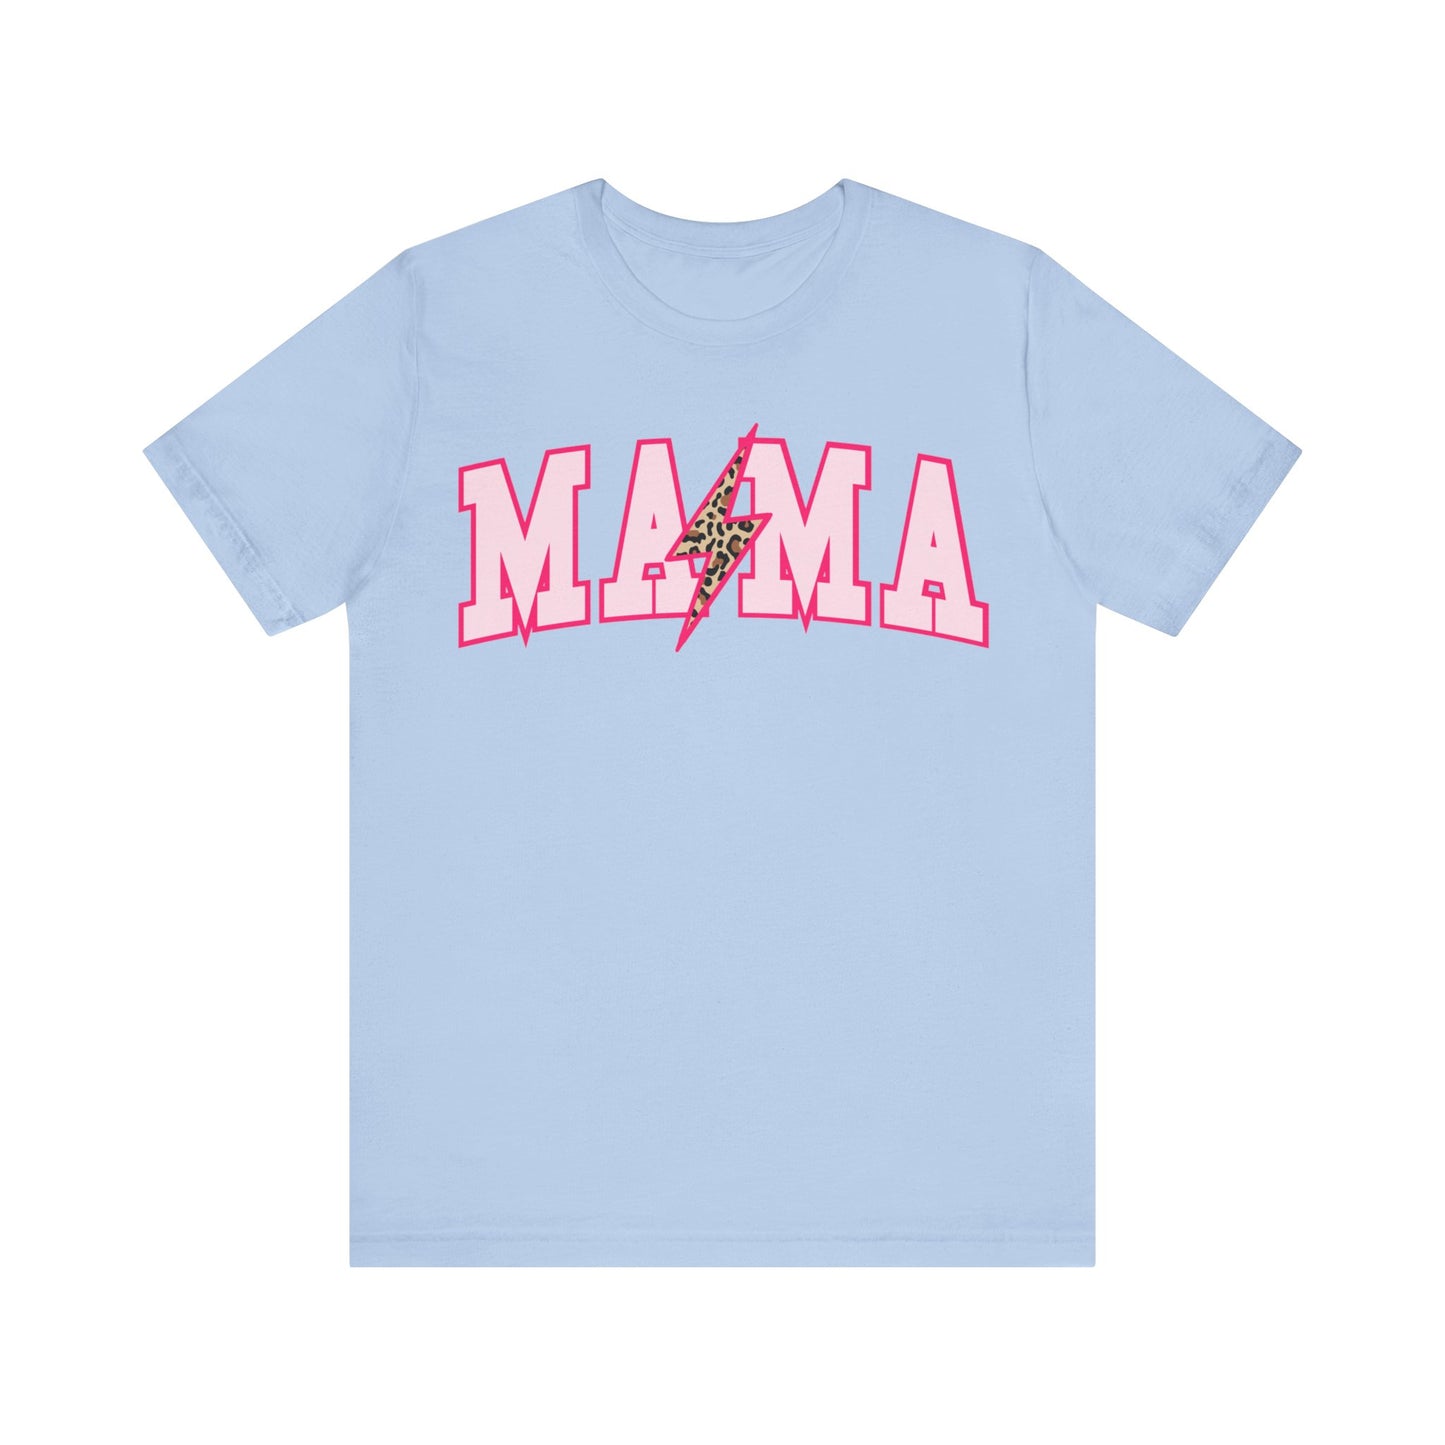 Mama Shirt, Happy Mother's Day Gift, Nana Shirt, Mom Shirt, Funny Mom Tshirt, Mom Club Shirt